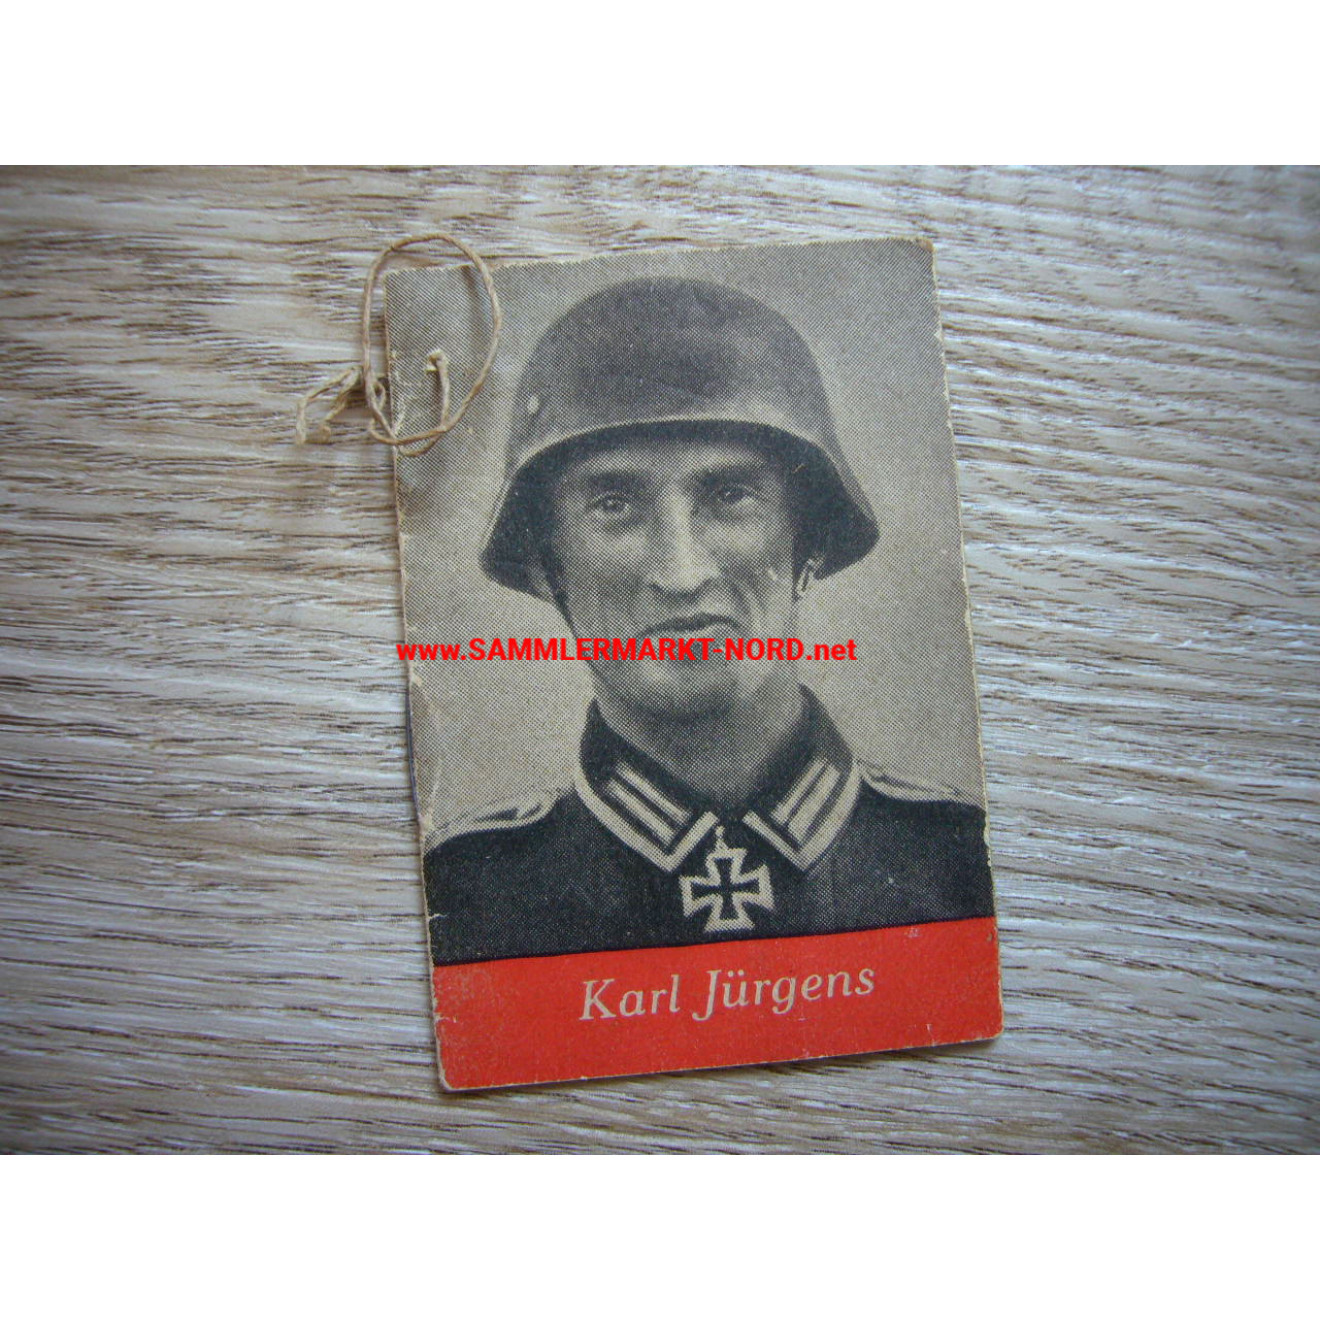 WHW booklet - Knight's Cross holder Karl Jürgens